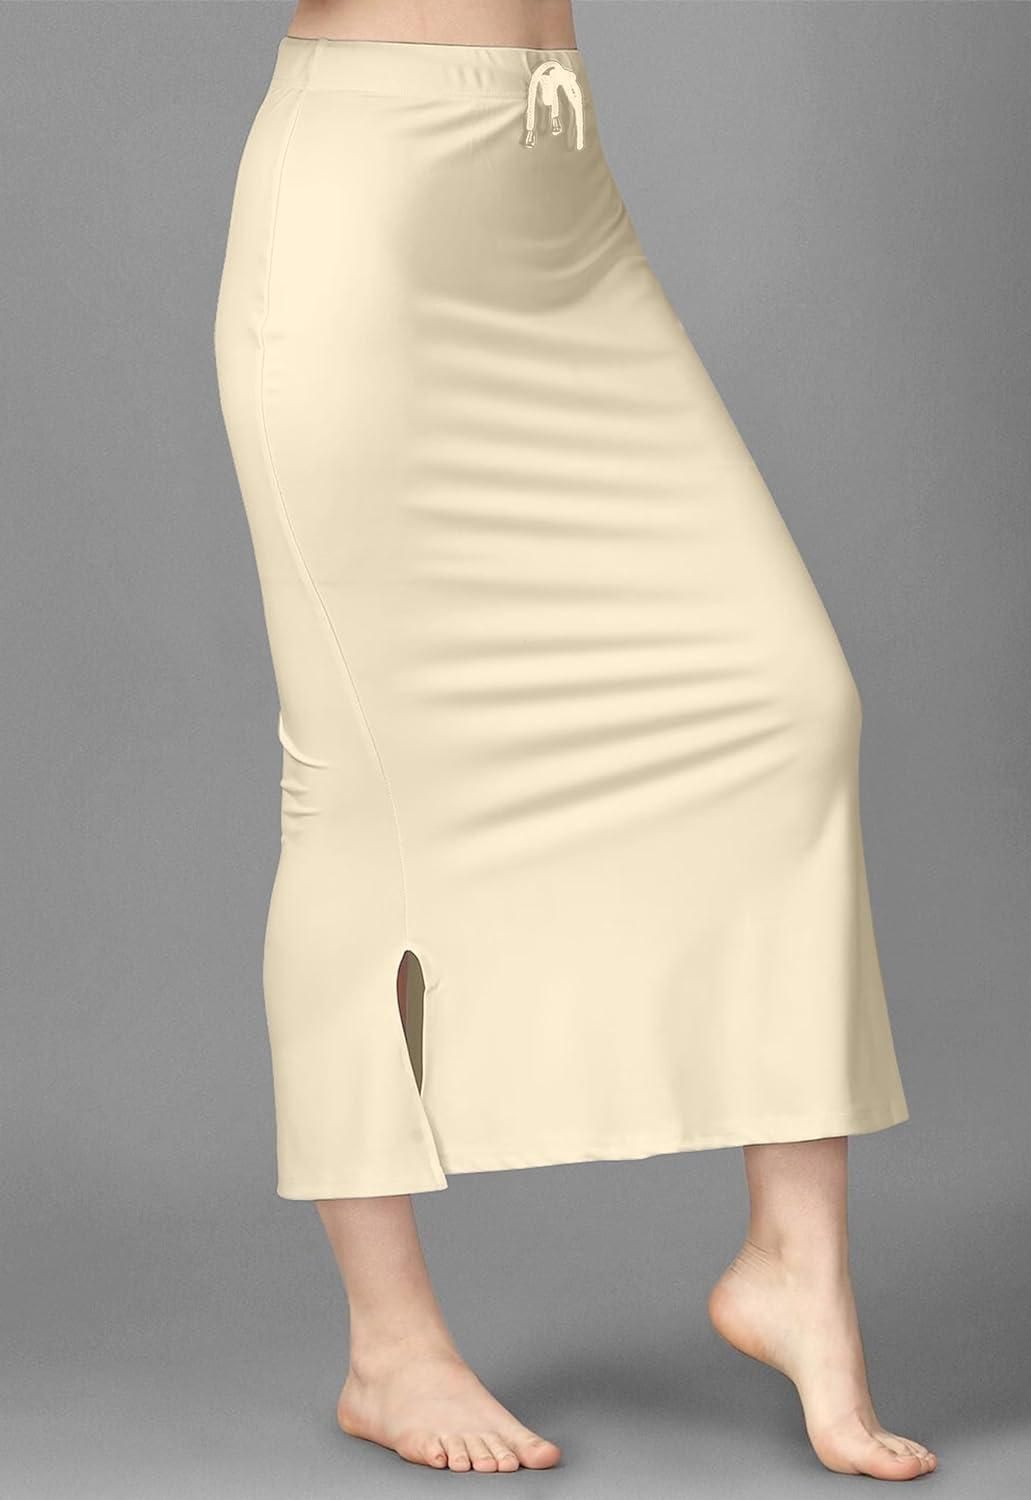 Mehrang Microfiber Saree Shapewear Petticoat for Women at Rs 399